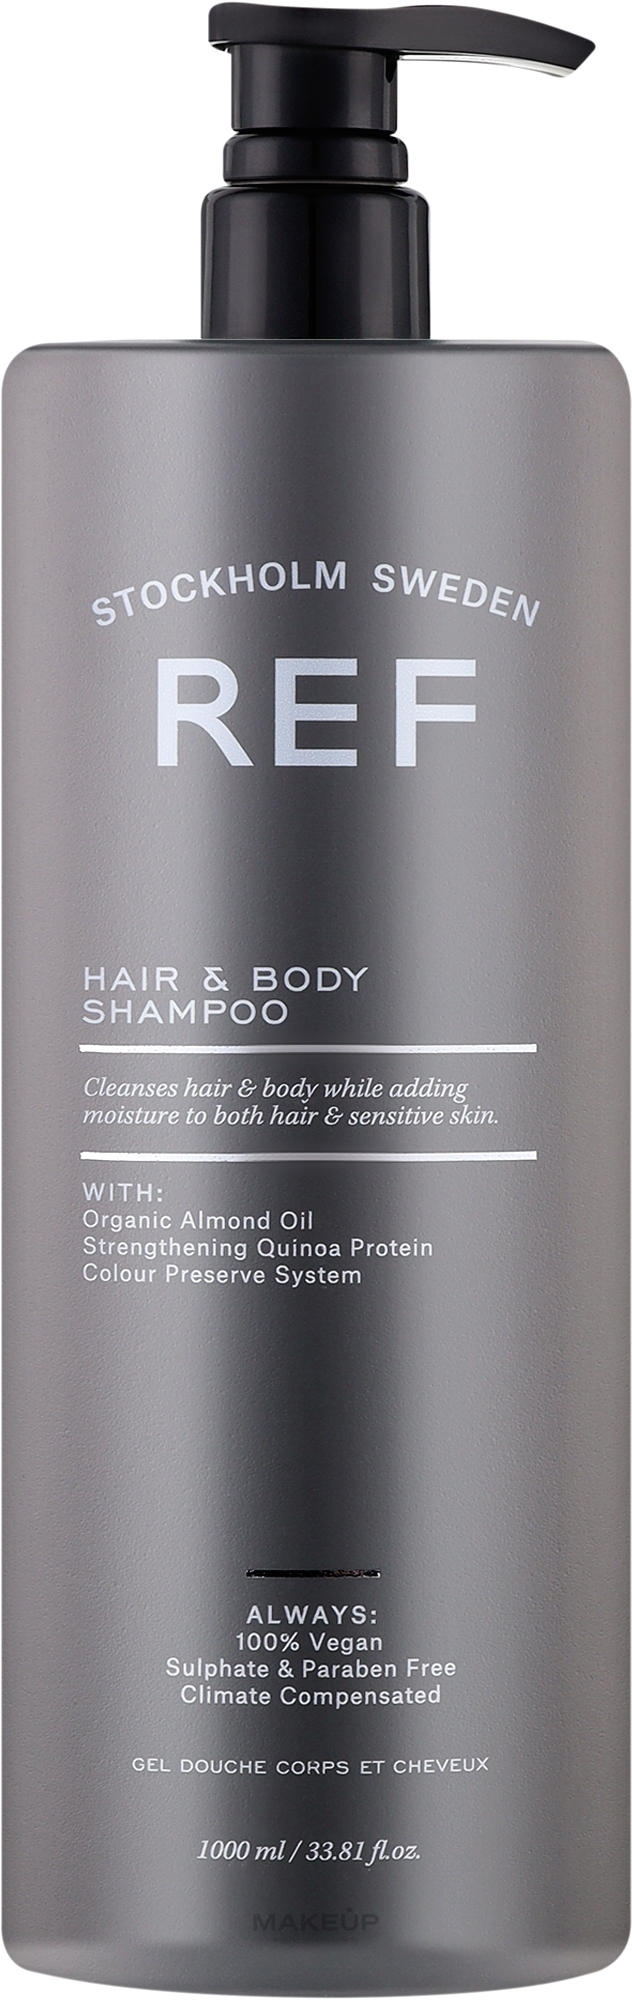 Feuchtigkeitsspendendes Haar- und Körpershampoo mit Quinoa-Protein und Mandelöl - REF Hair & Body Shampoo — Bild 1000 ml